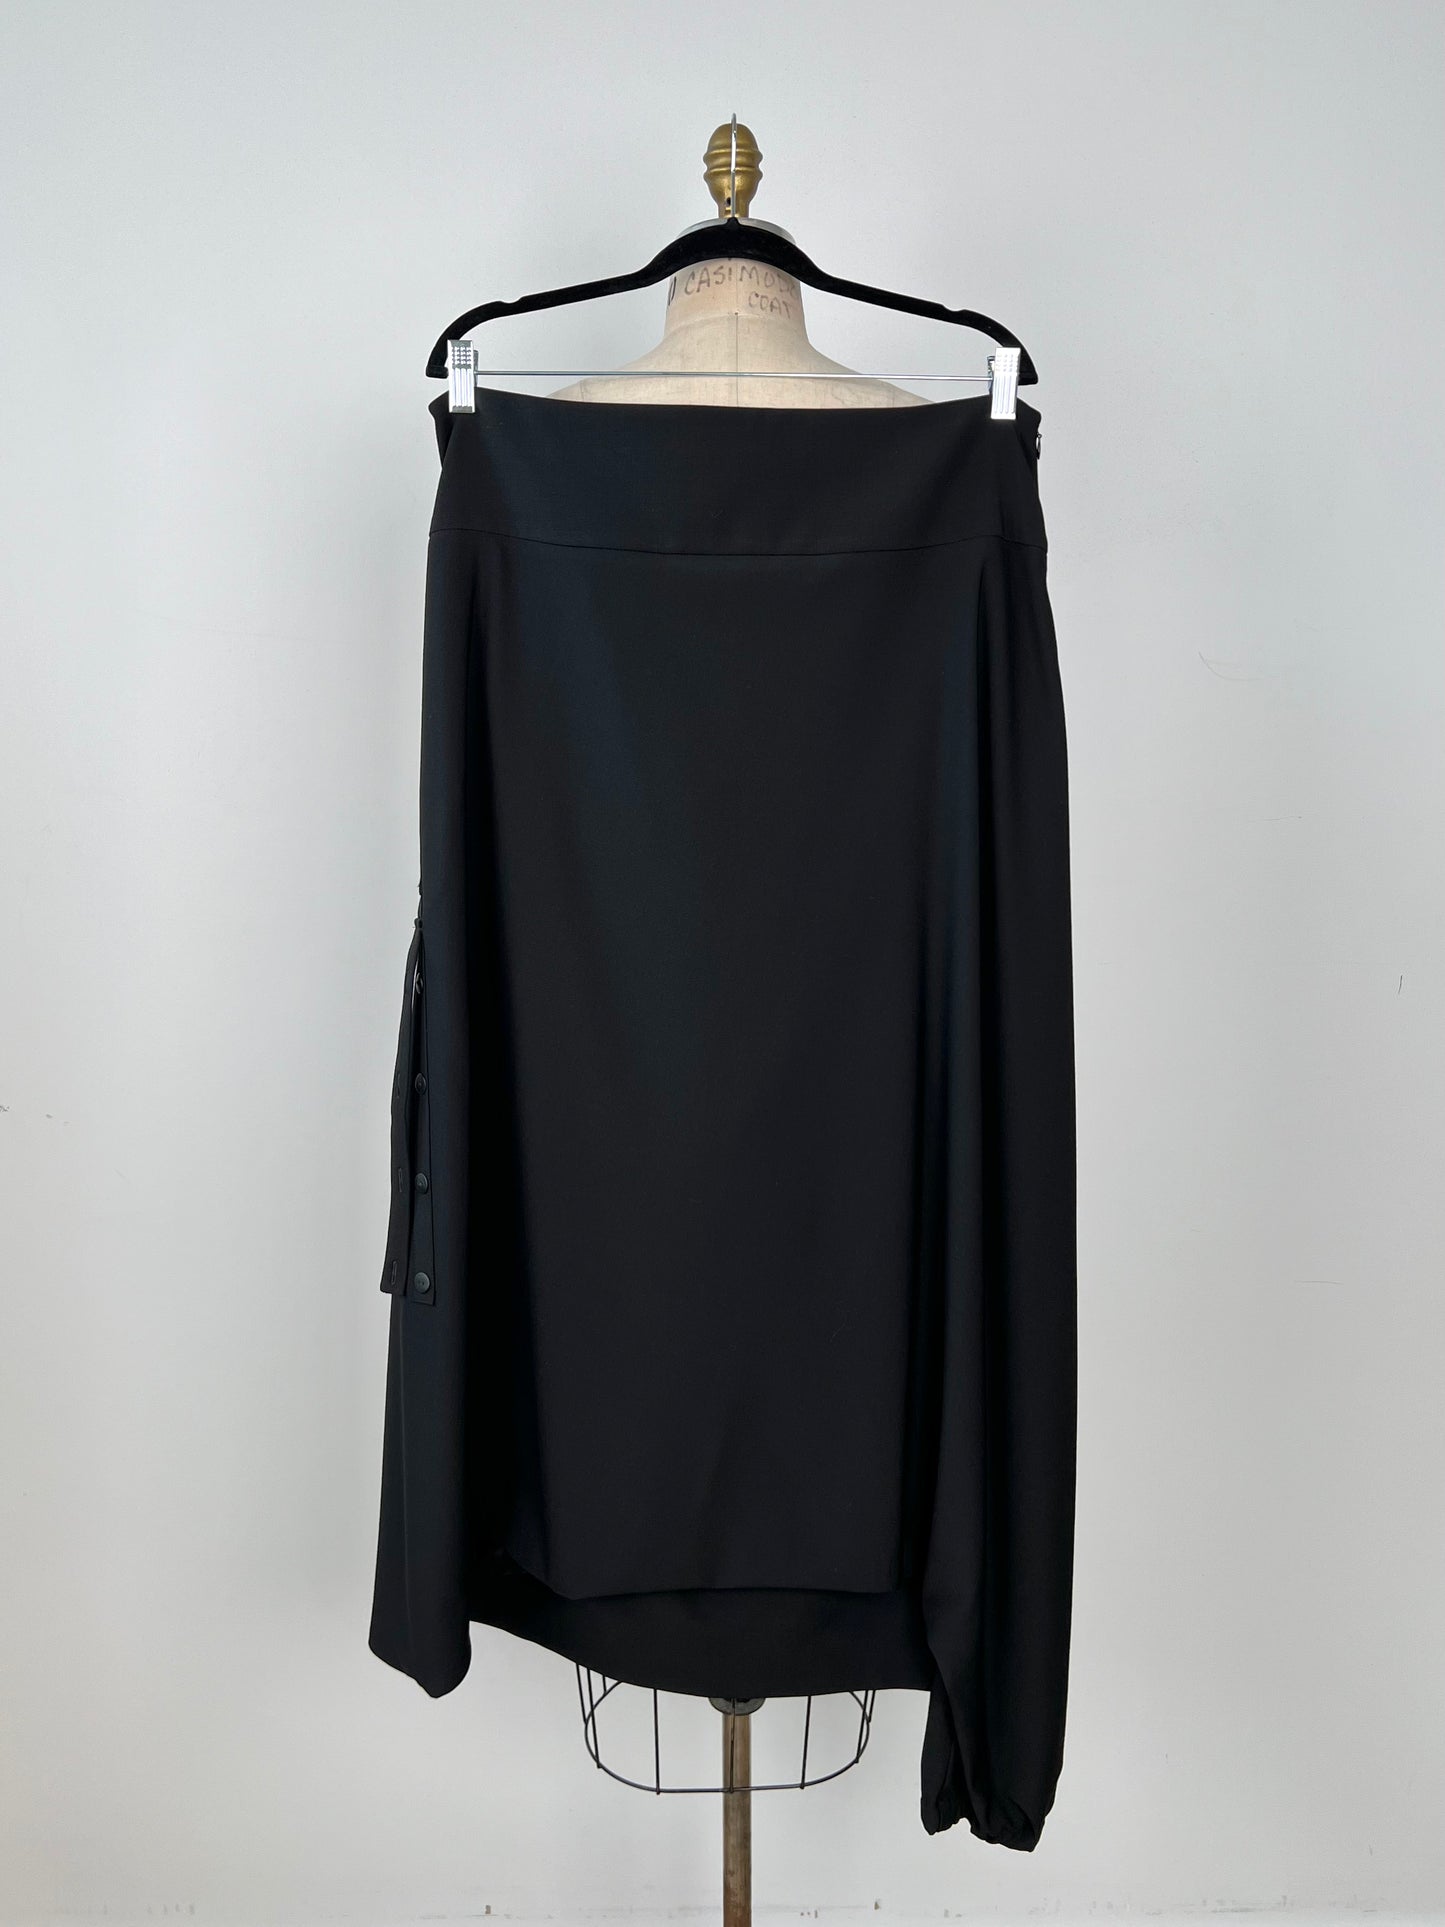 Pantalon noir sarouel asymétrique à pan de jupe (XL)